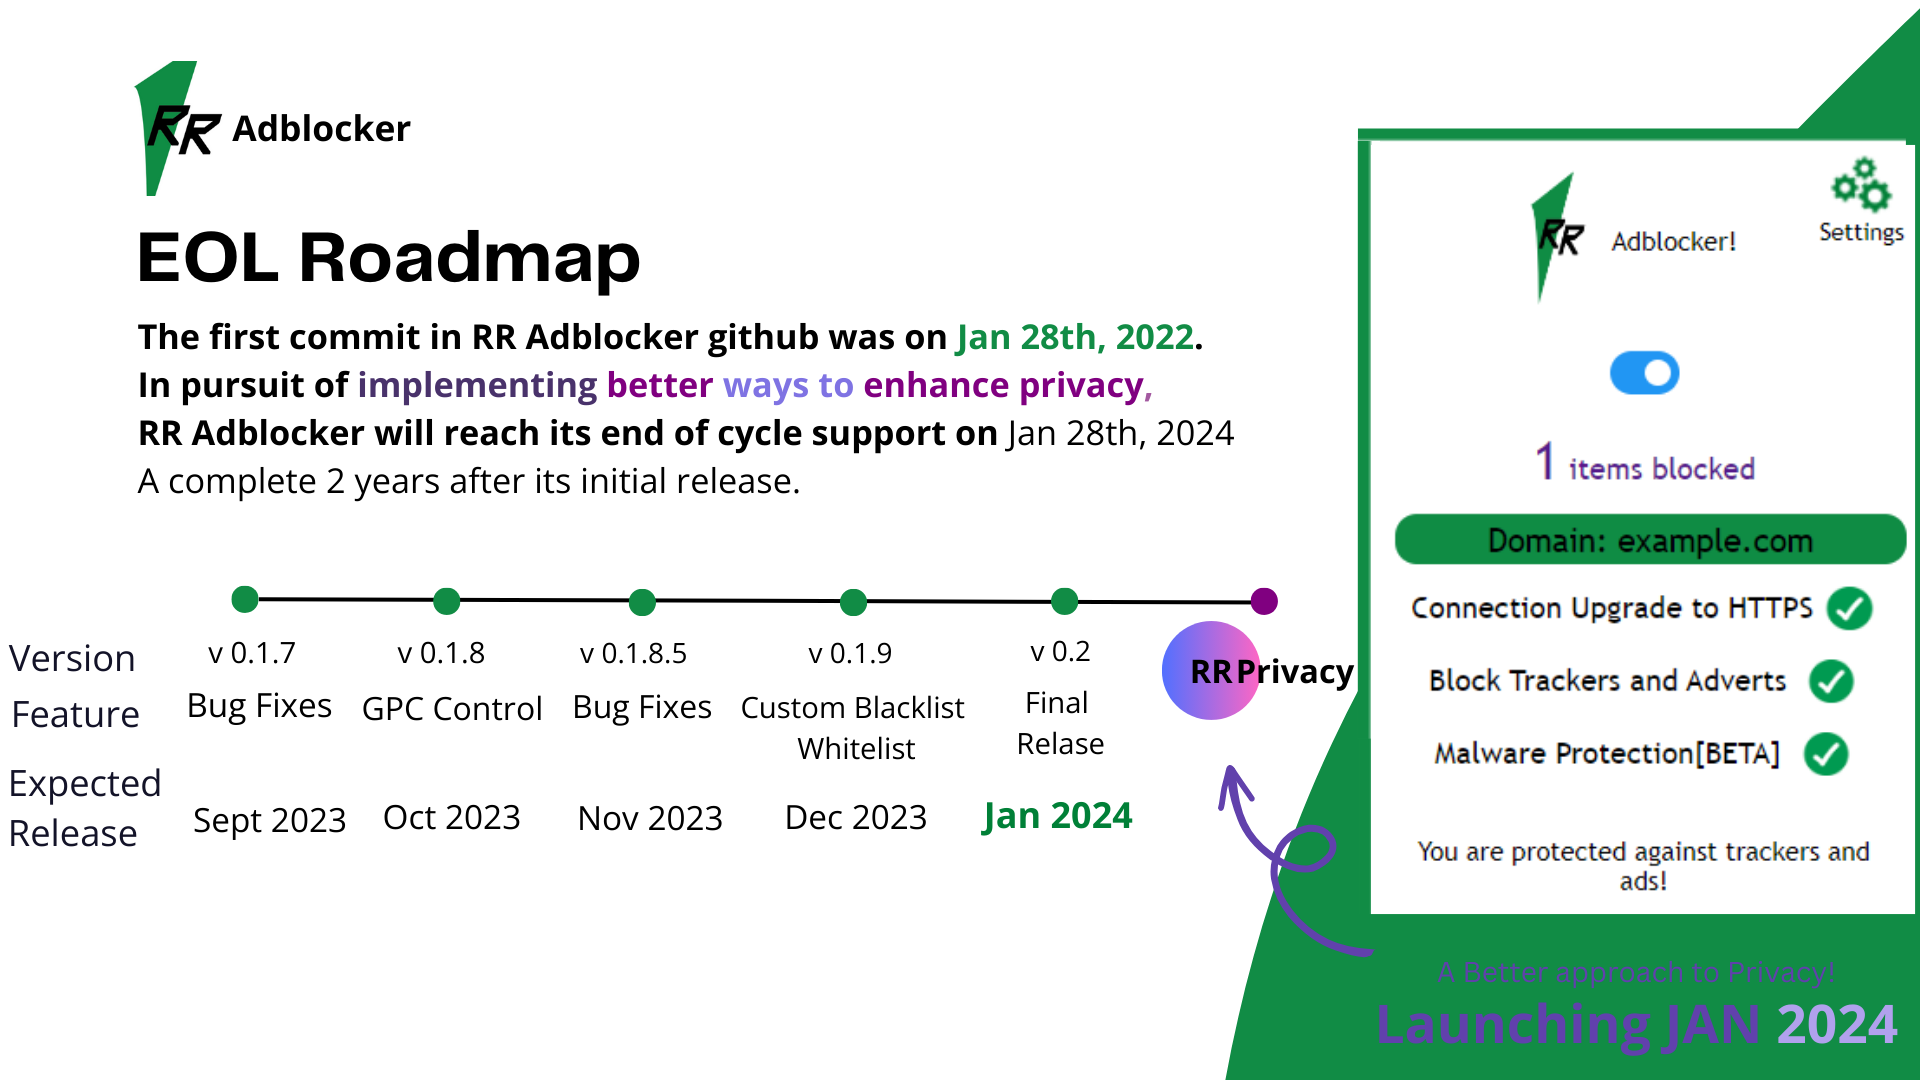 RR Adblocker EOL Roadmap